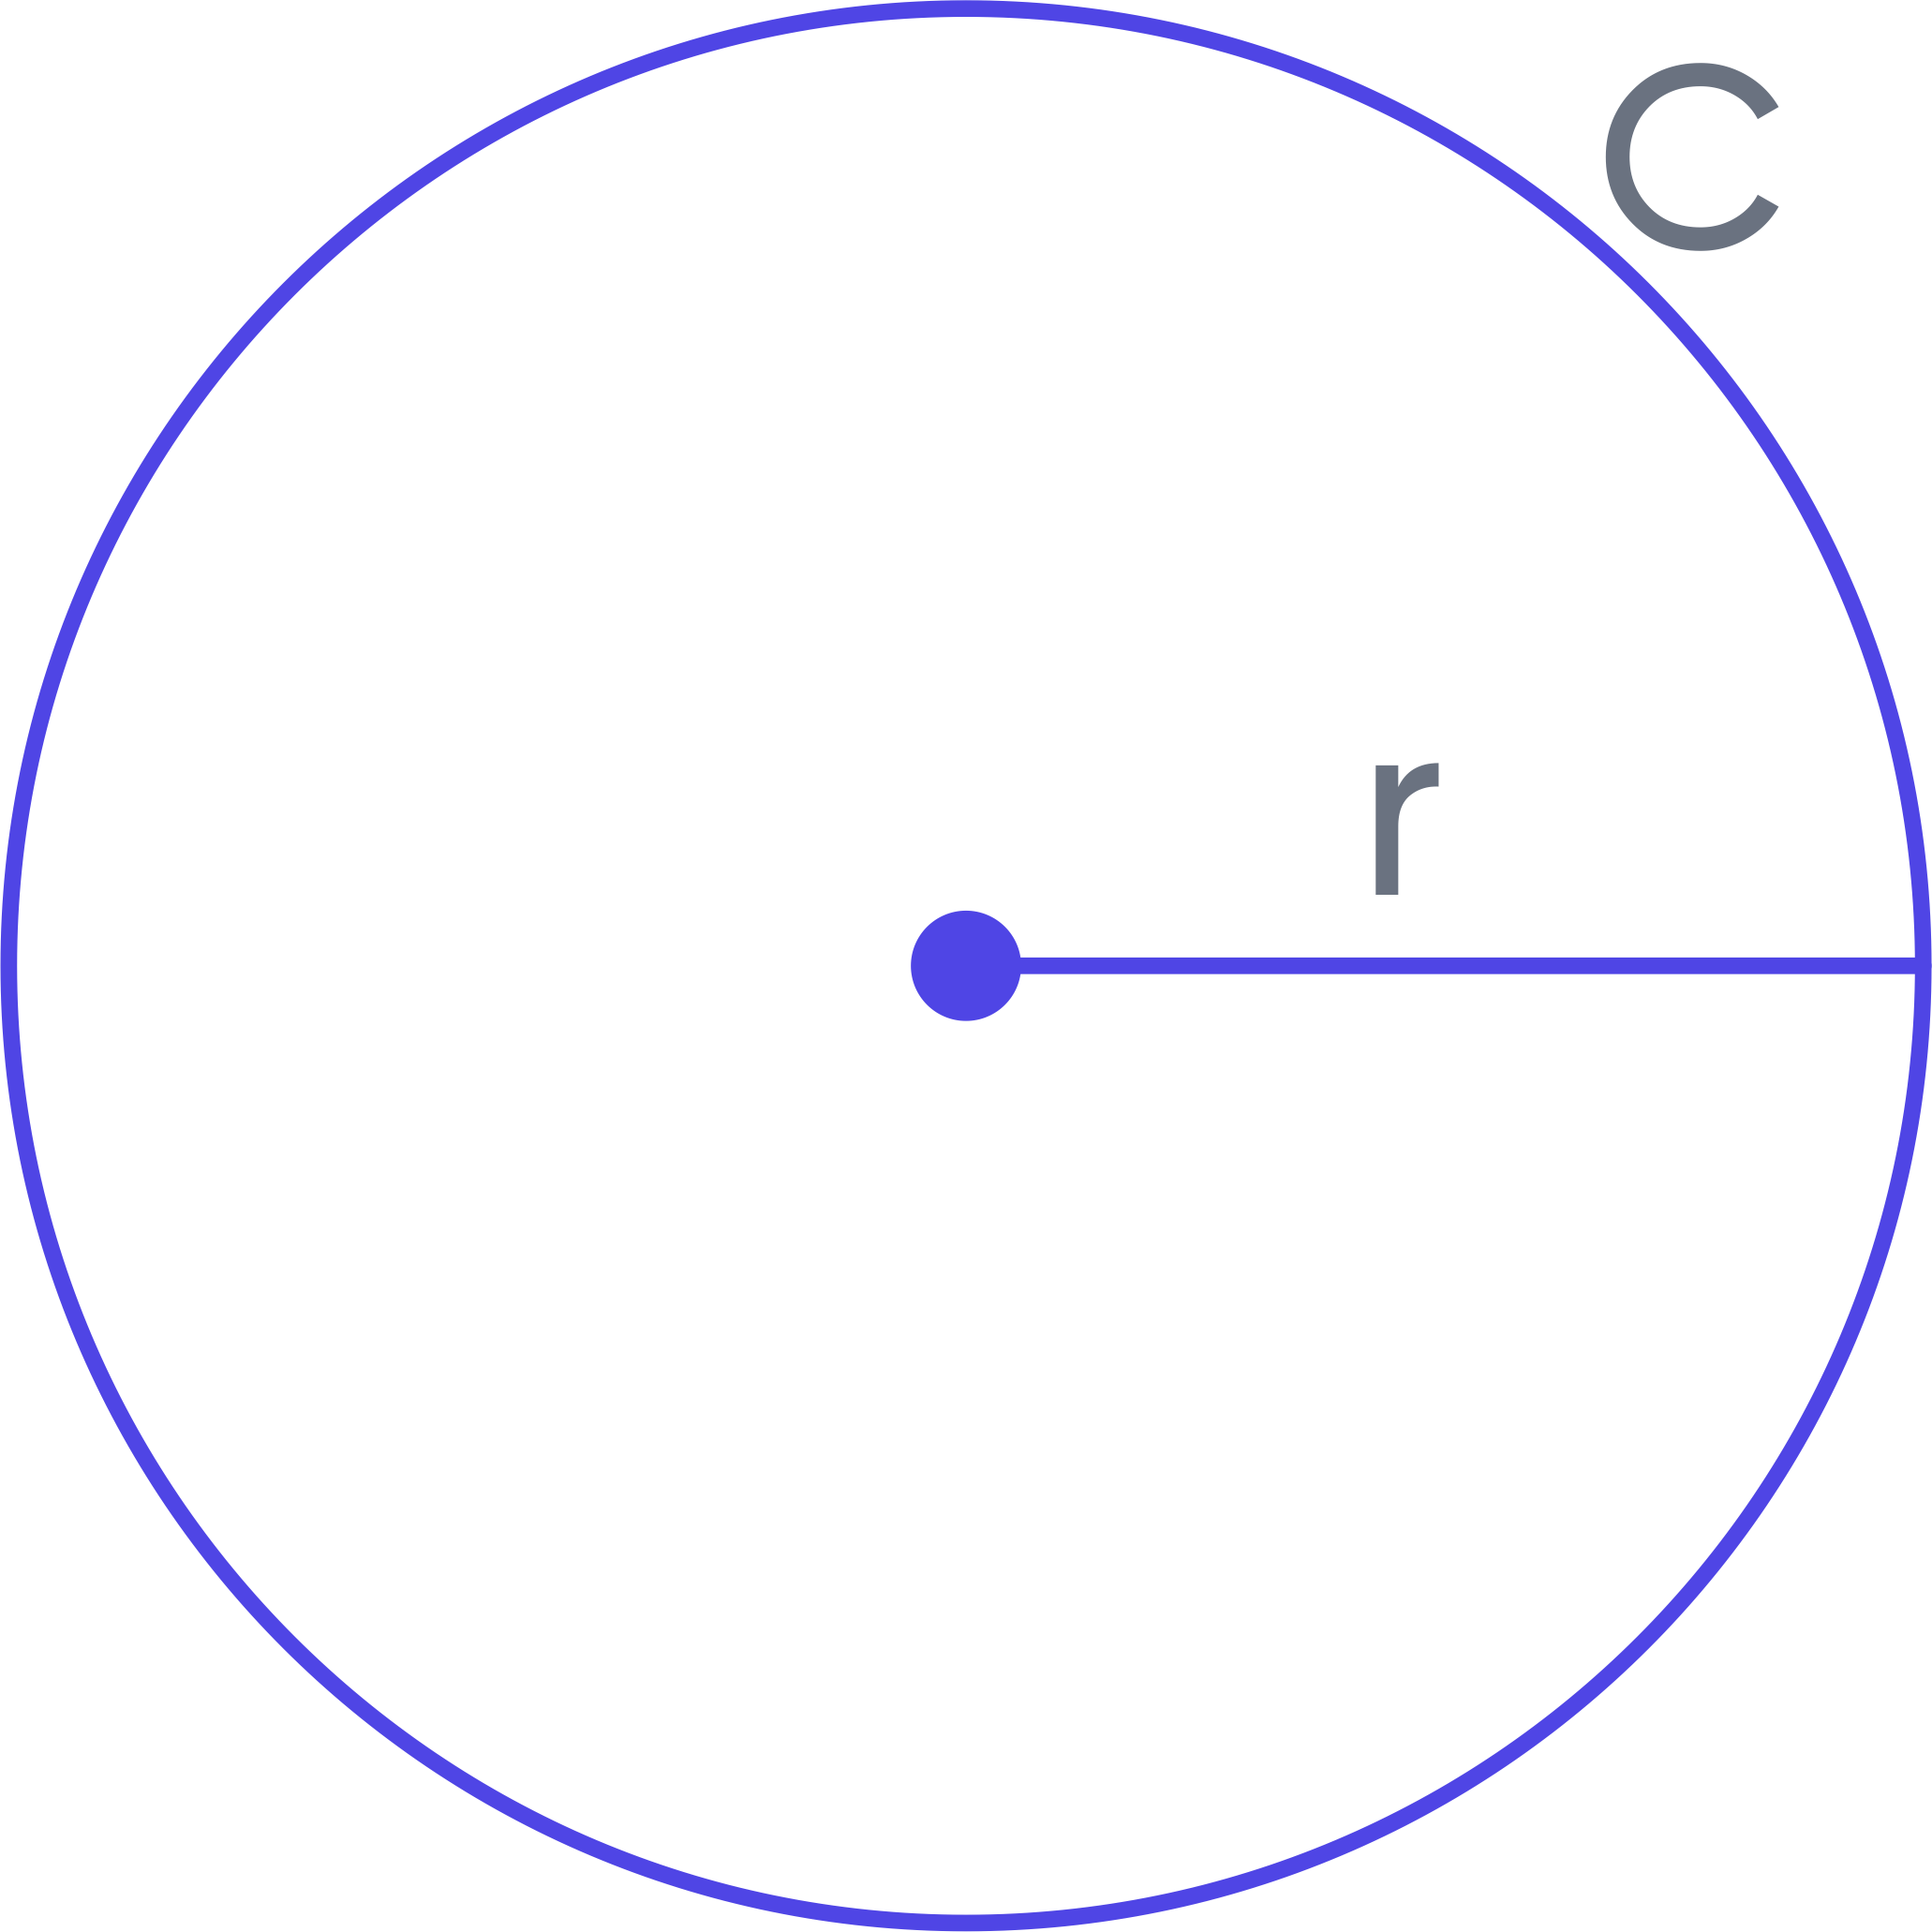 Omtrek en straal van een cirkel